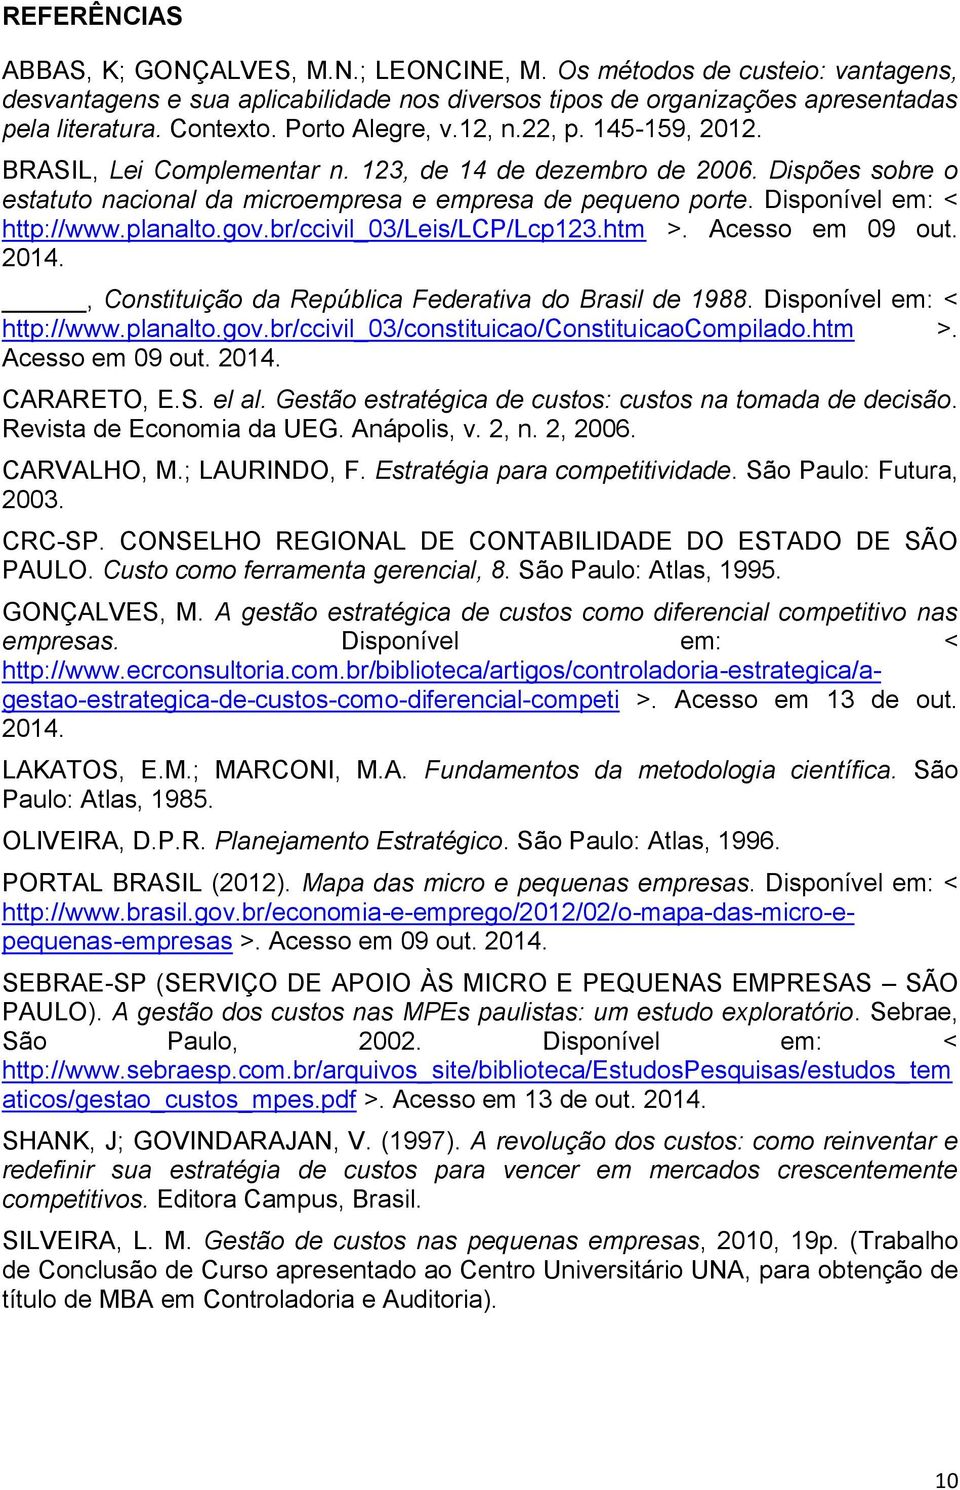 Disponível em: < http://www.planalto.gov.br/ccivil_03/leis/lcp/lcp123.htm >. Acesso em 09 out. 2014., Constituição da República Federativa do Brasil de 1988. Disponível em: < http://www.planalto.gov.br/ccivil_03/constituicao/constituicaocompilado.